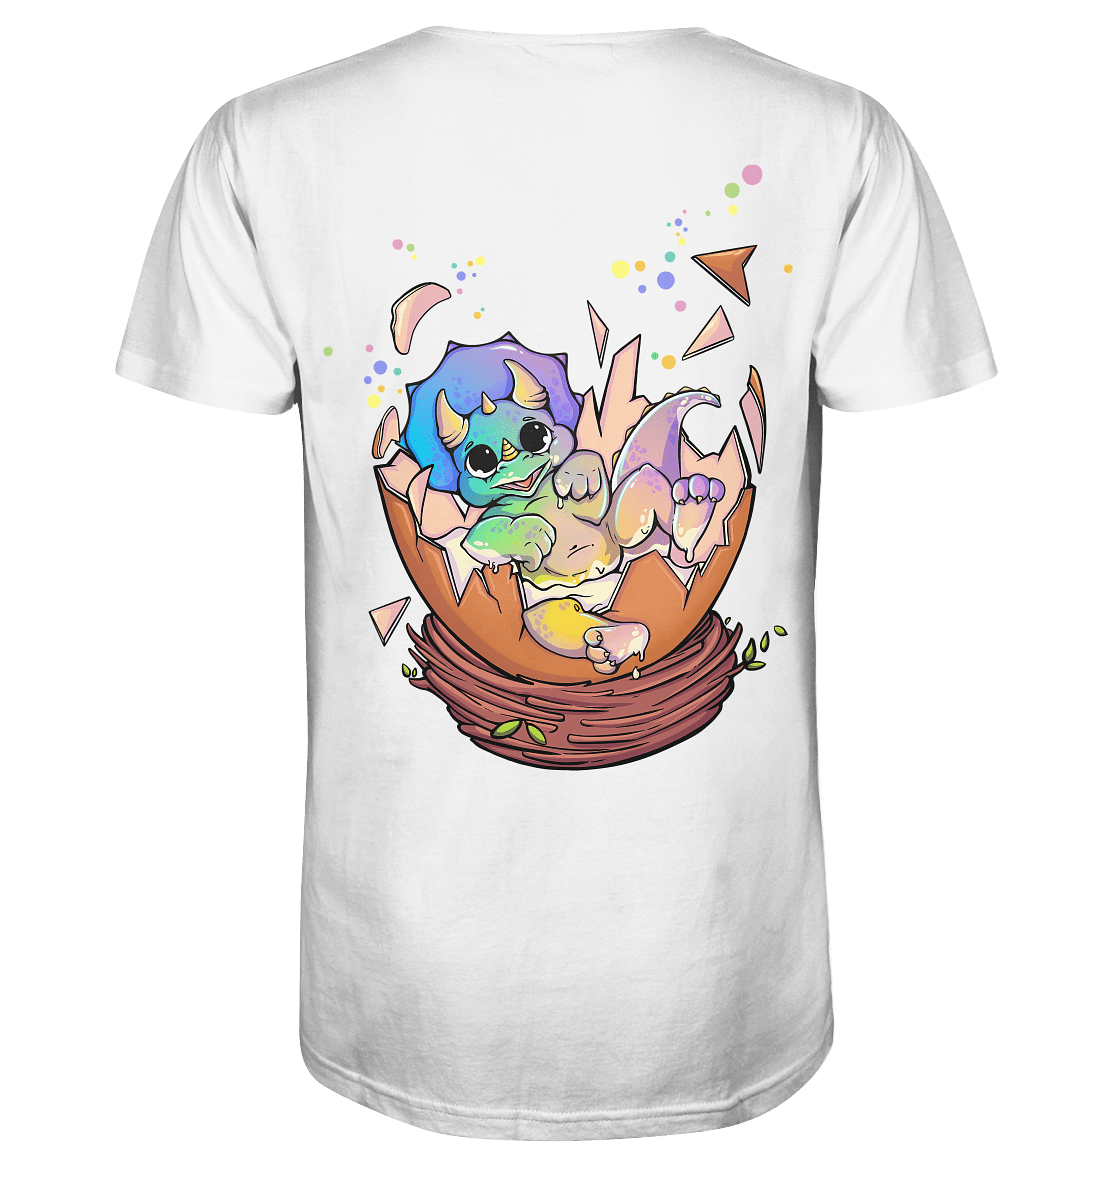 Just Legends Easter Egg Shirt | Funktionaler, veganer Merchandise auf Pulverbasis ohne Zucker, mit wenig Kalorien, vielen Vitaminen und natürlichen Aromen.